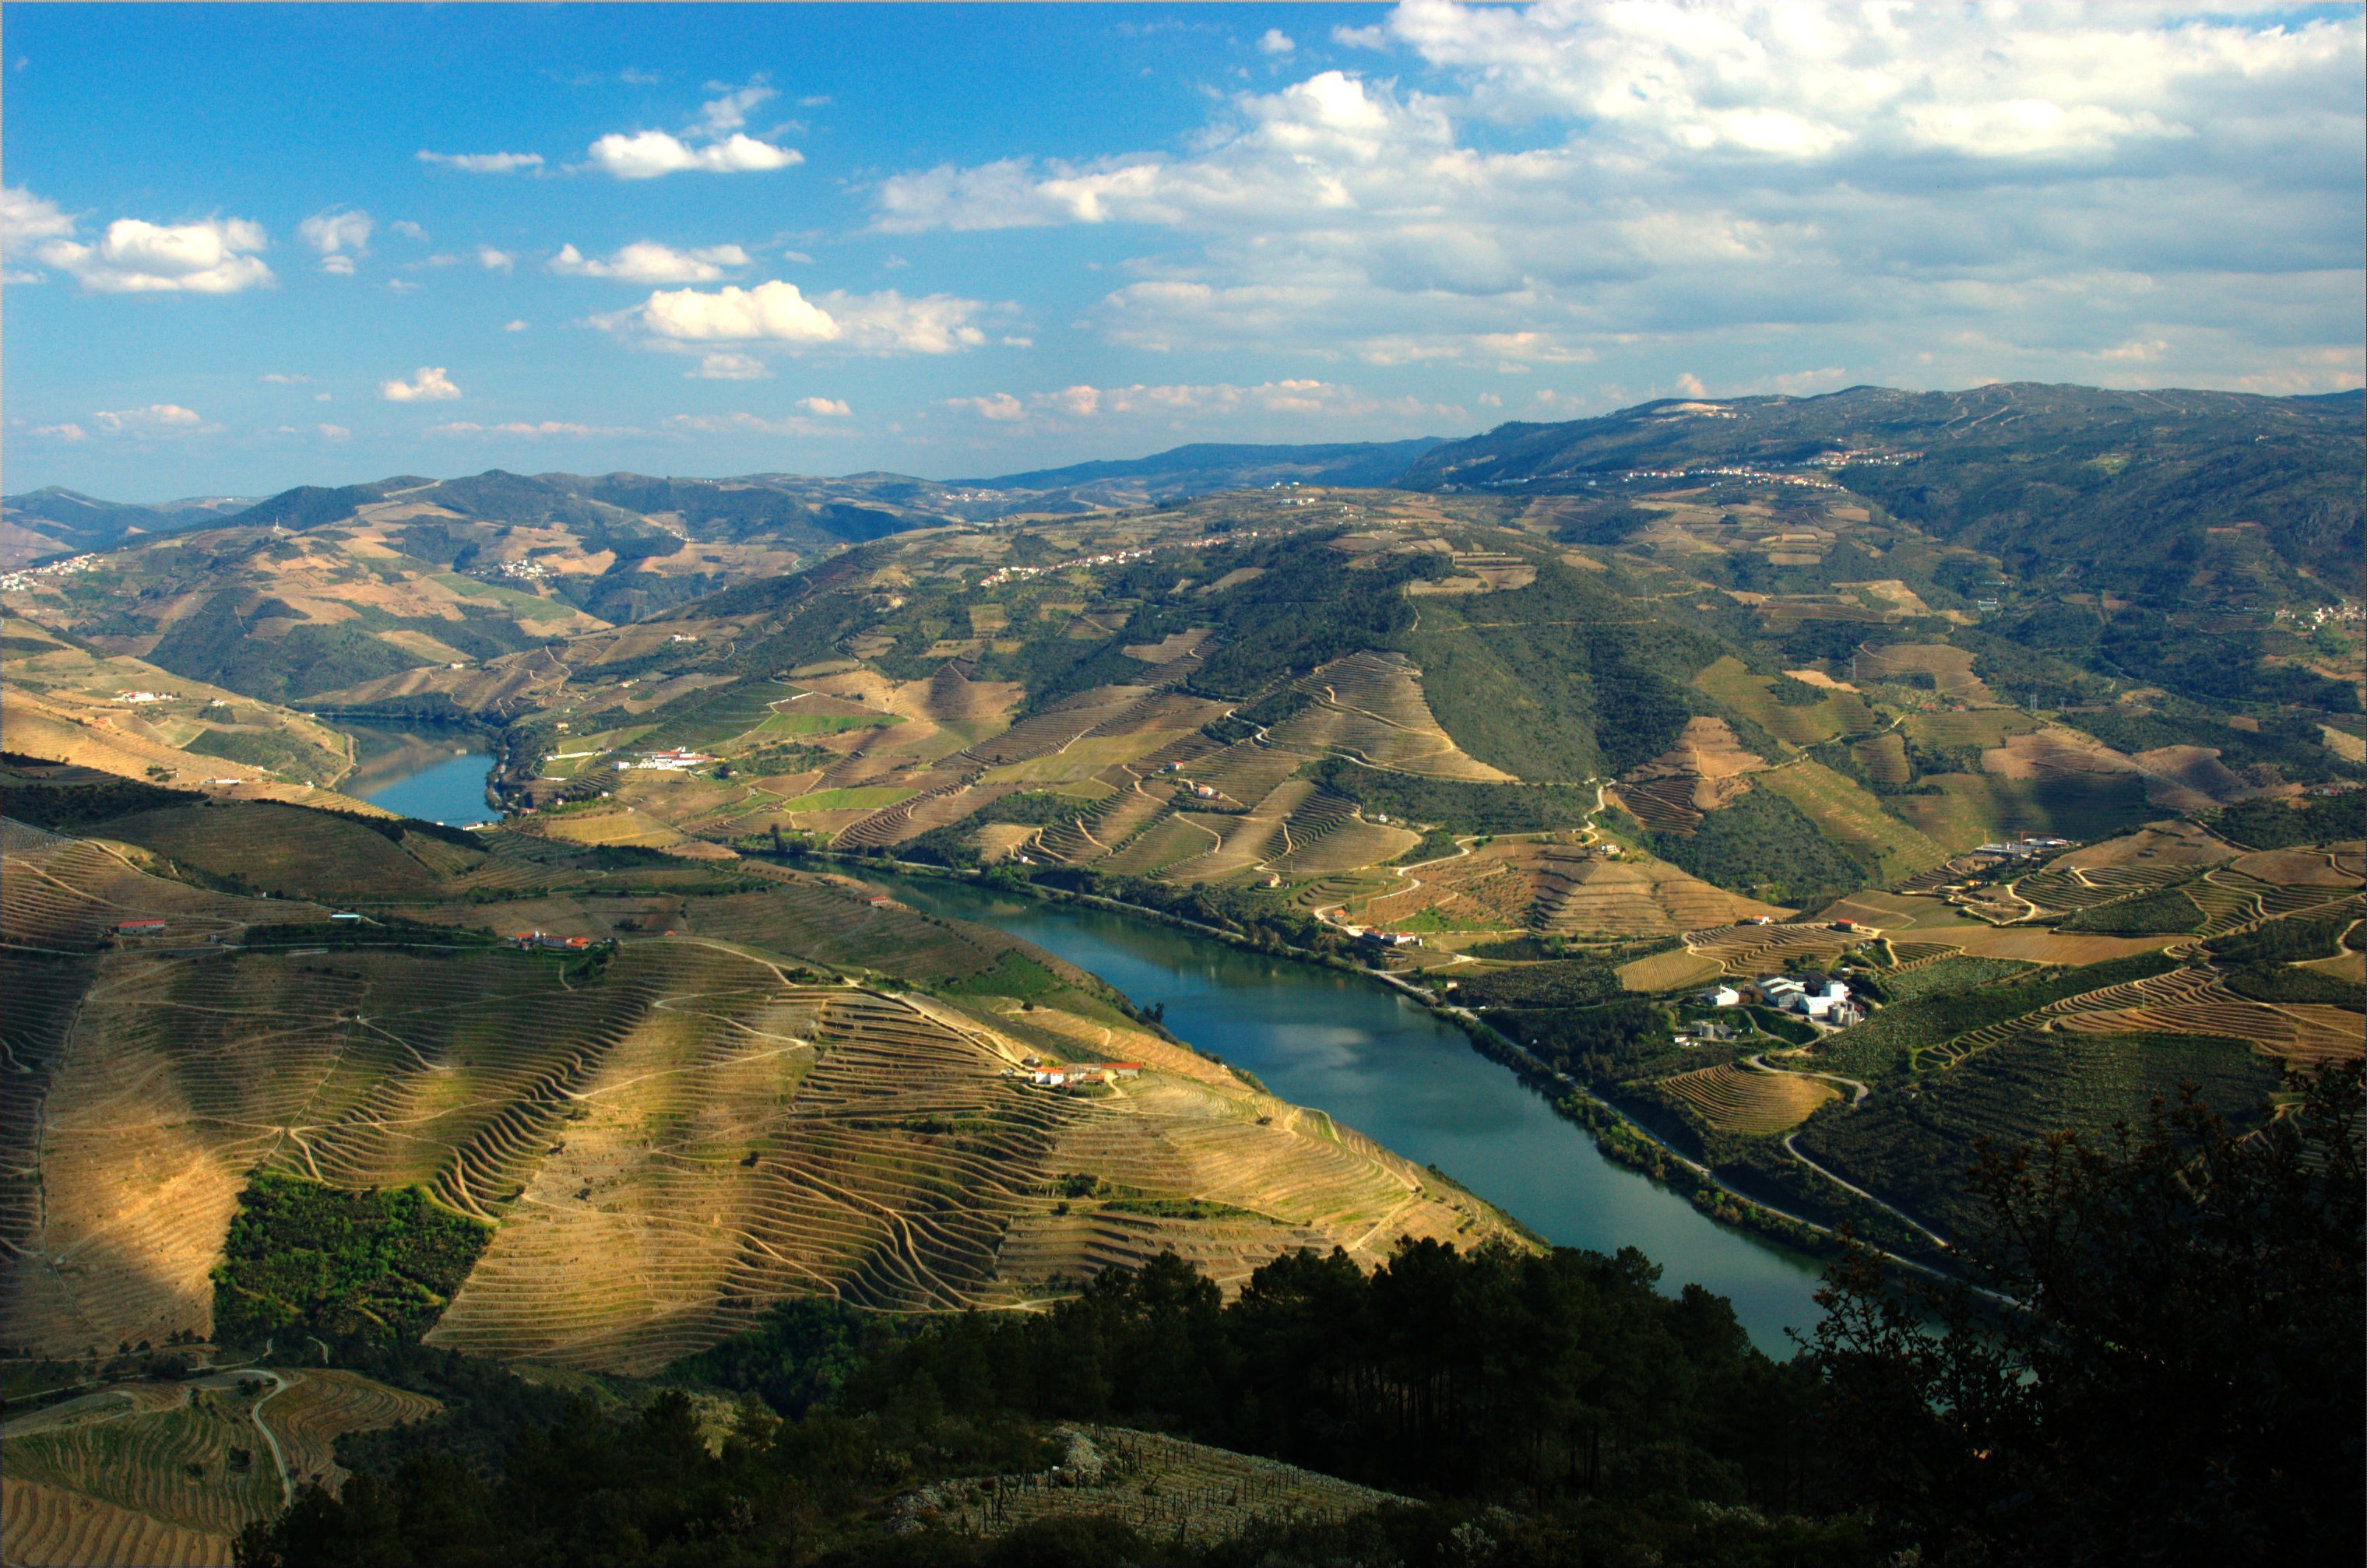 Miradouro de São Leonardo da Galafura, Douro Valley, Portugal